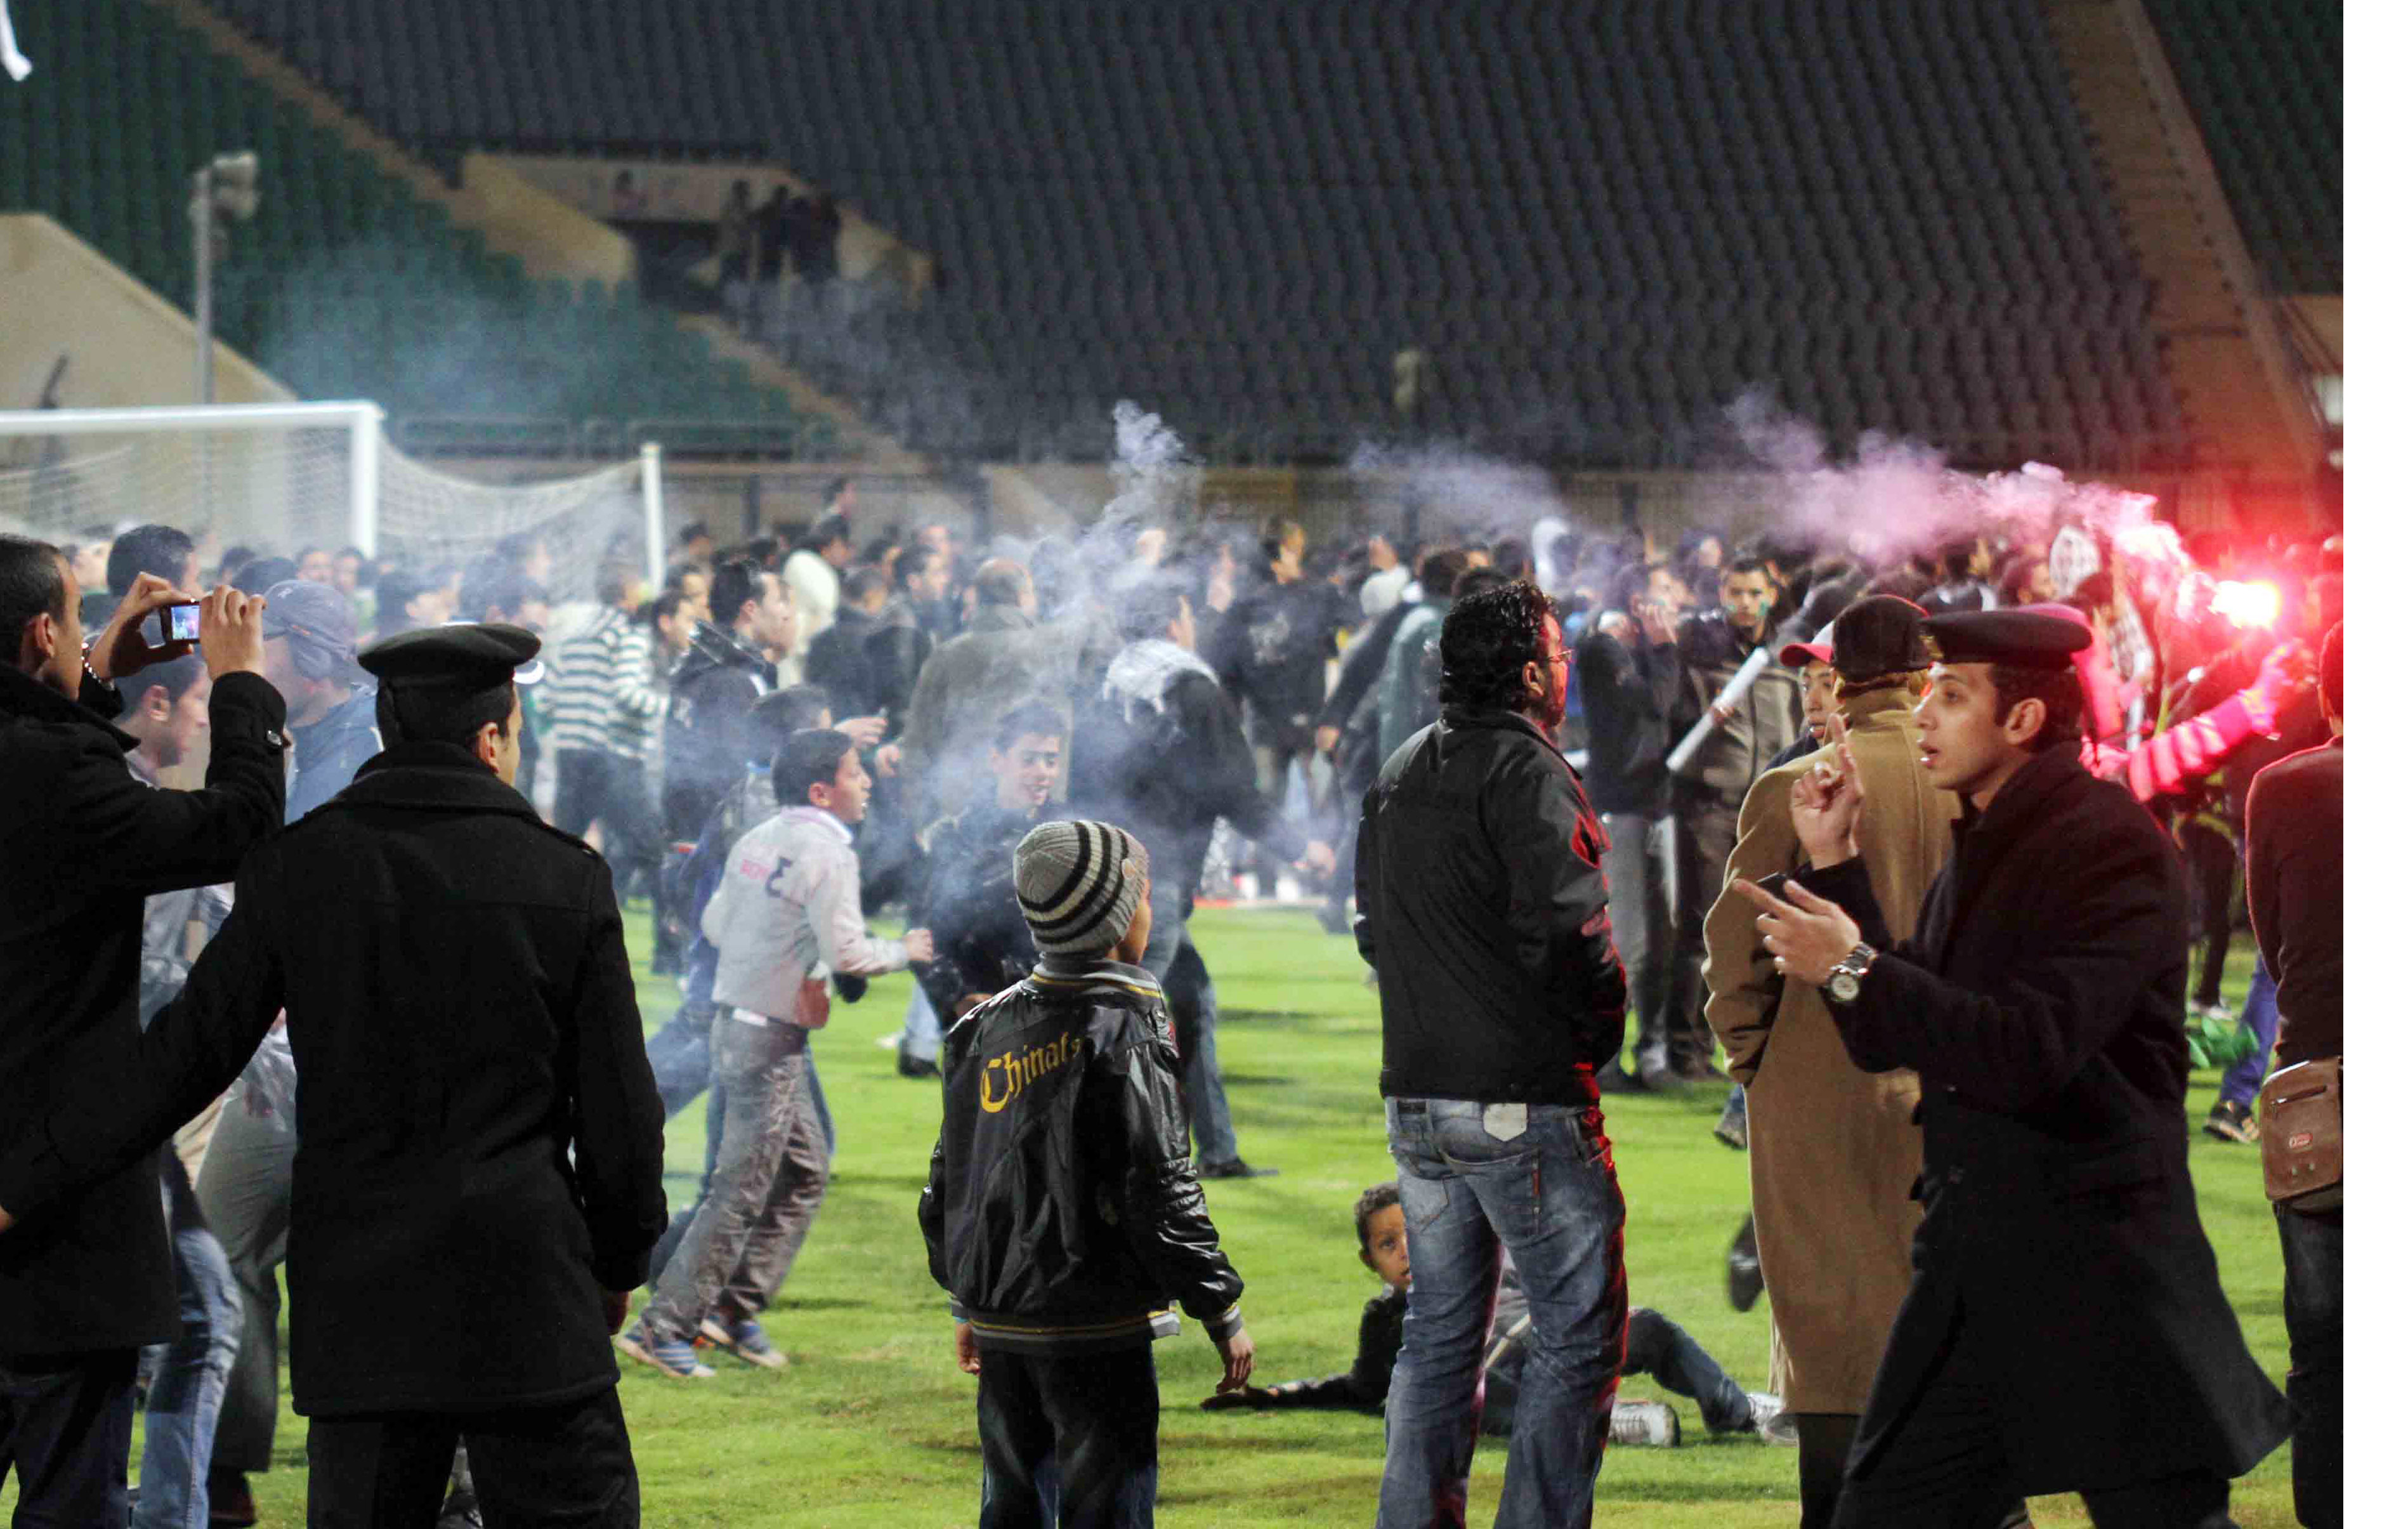 Matchen mellan Al-Masry och Al-Ahly fick ett tragiskt slut. Efter slutsignalen  stormade hemmalagets supportrar planen och gick till attack mot motståndarnas spelare och fans.